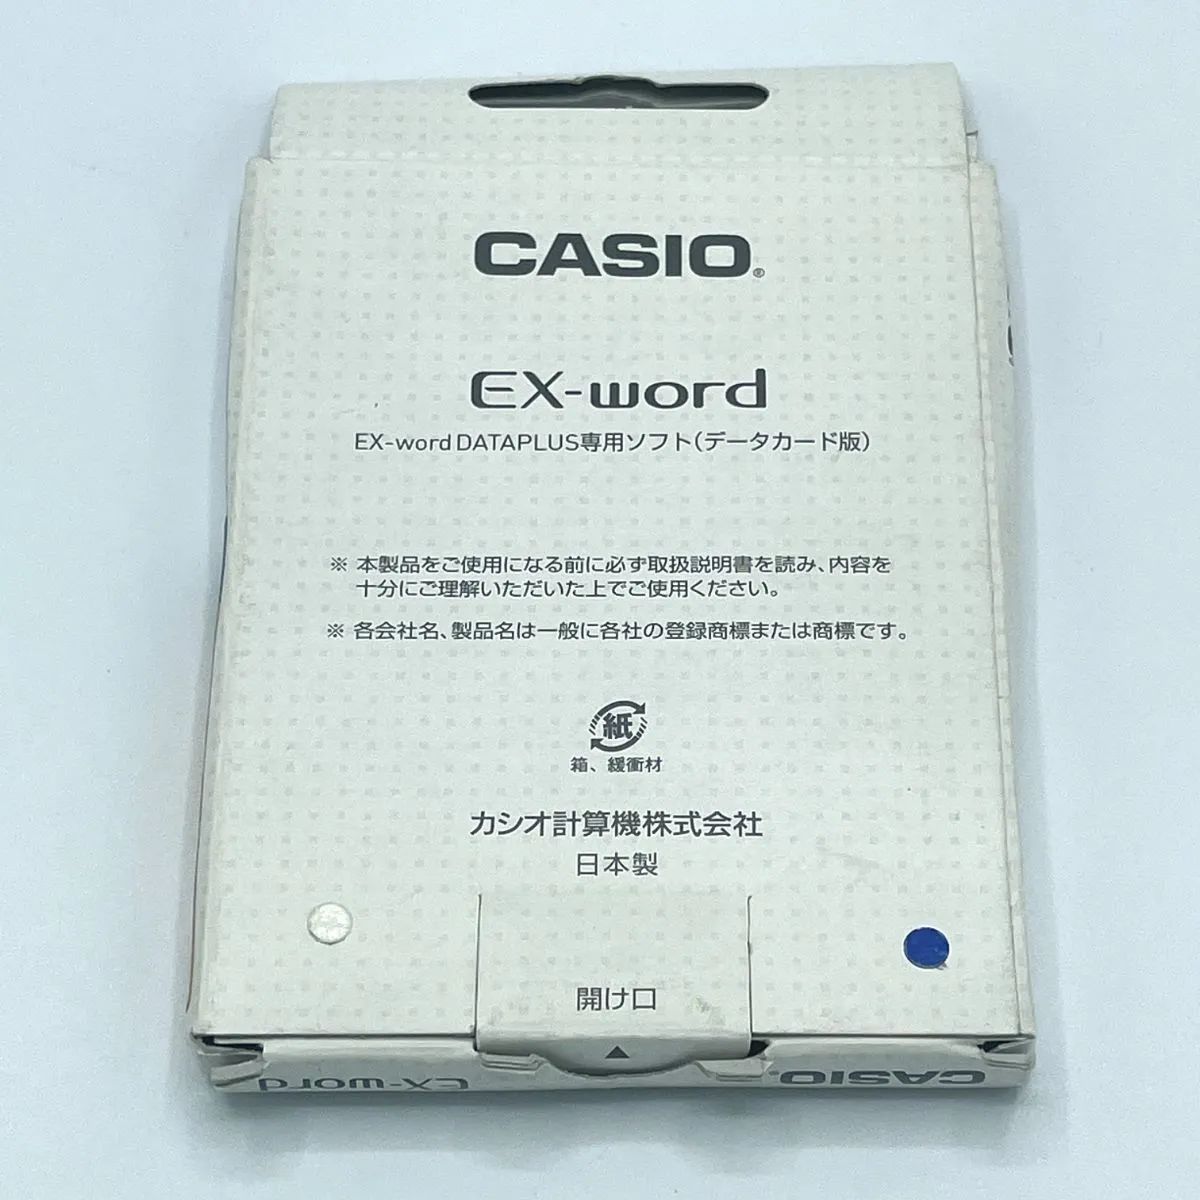 カシオ CASIO EX-word DATAPLUS専用ソフト 追加コンテンツ 現代